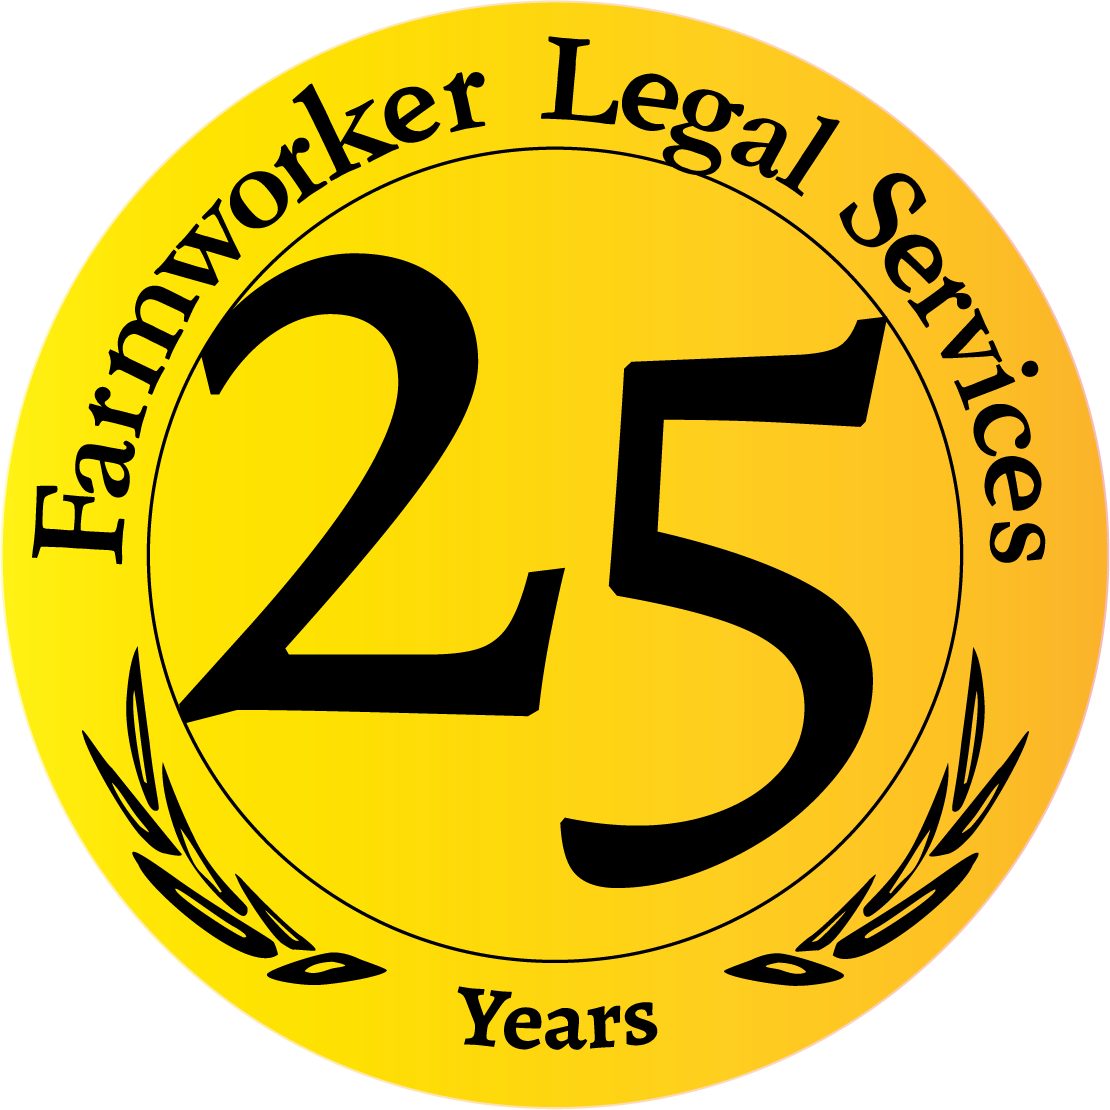 Farmworker Legal Services of Michigan